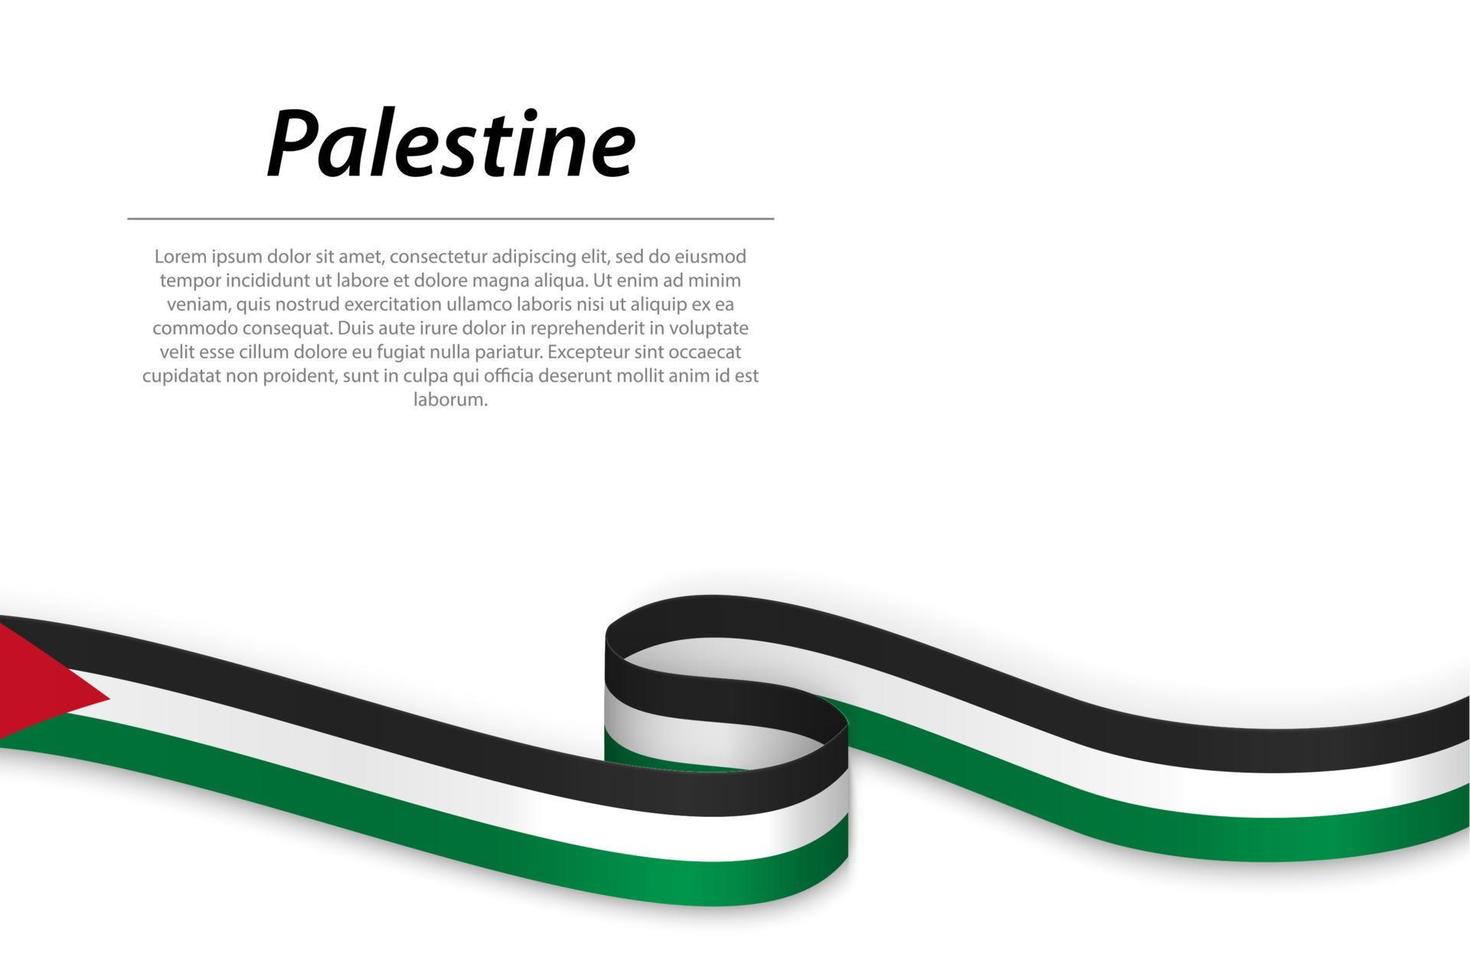 schwenkendes band oder banner mit flagge von palästina vektor